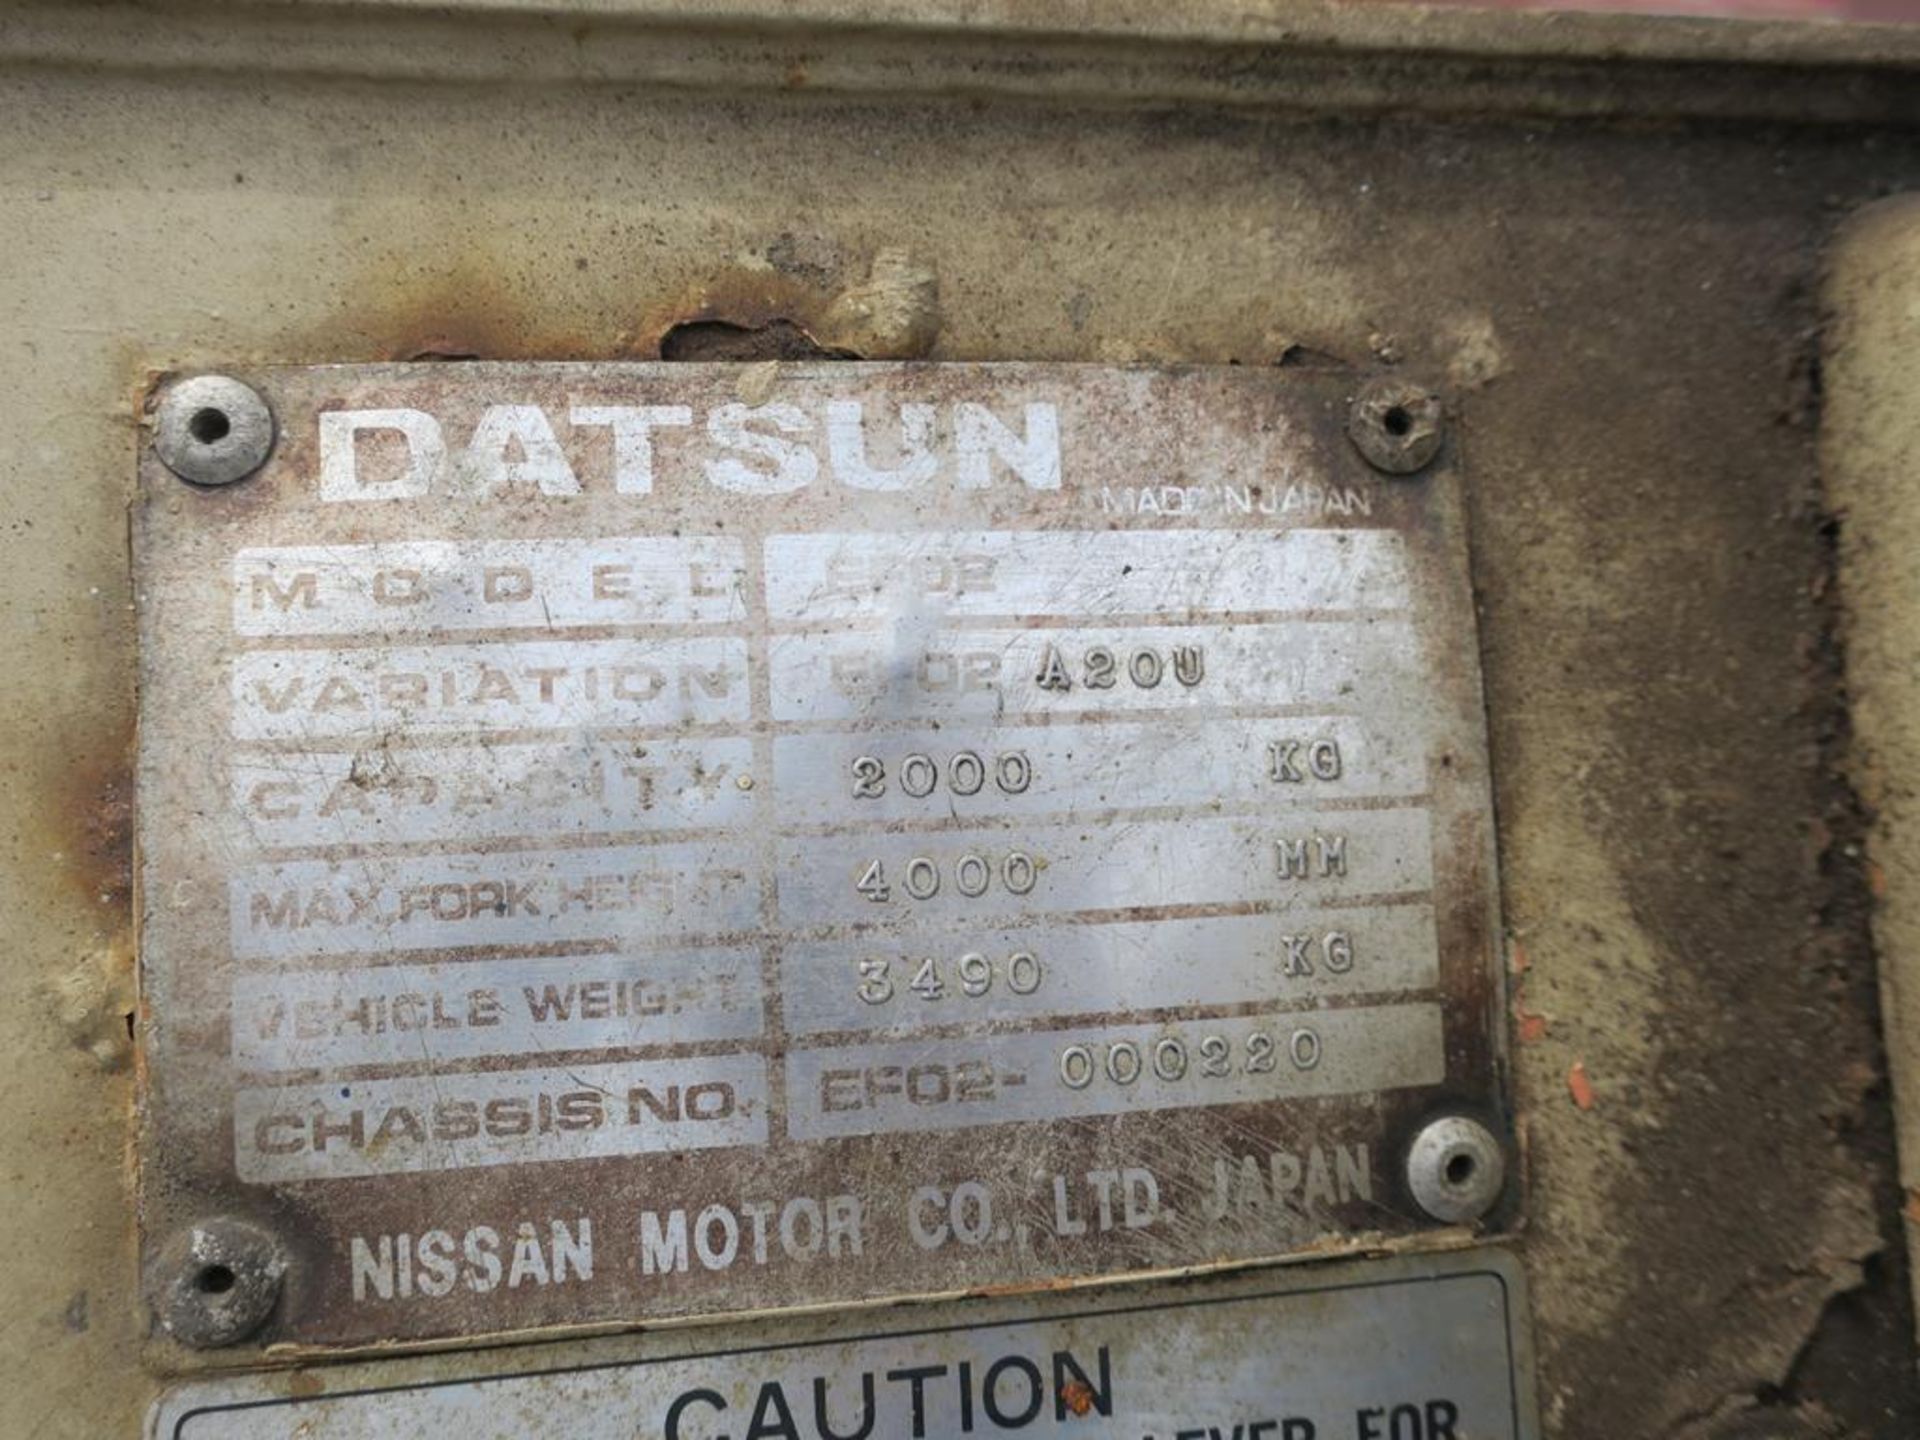 A Datsun 20 Diesel Forklift 2 ton 1391 hours Model EF02 variation A2OU. - Image 3 of 6